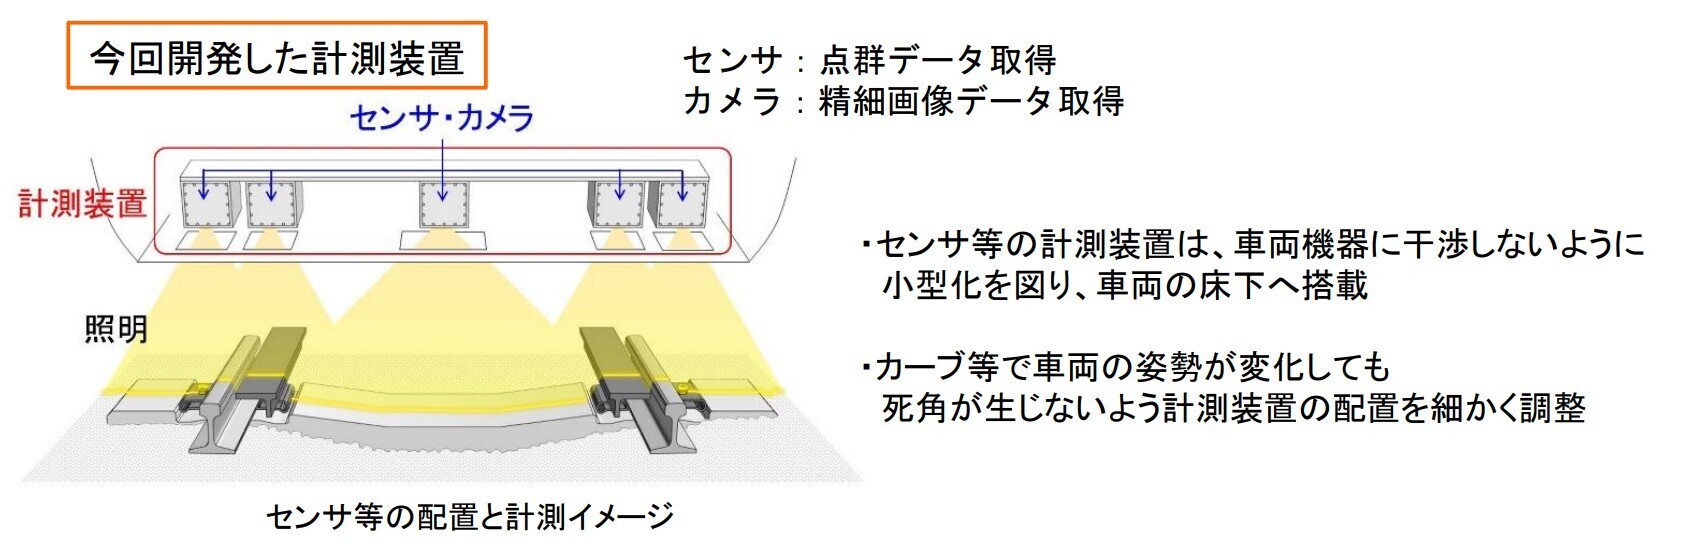 営業車両に搭載可能な「軌道材料モニタリングシステム」の検測装置